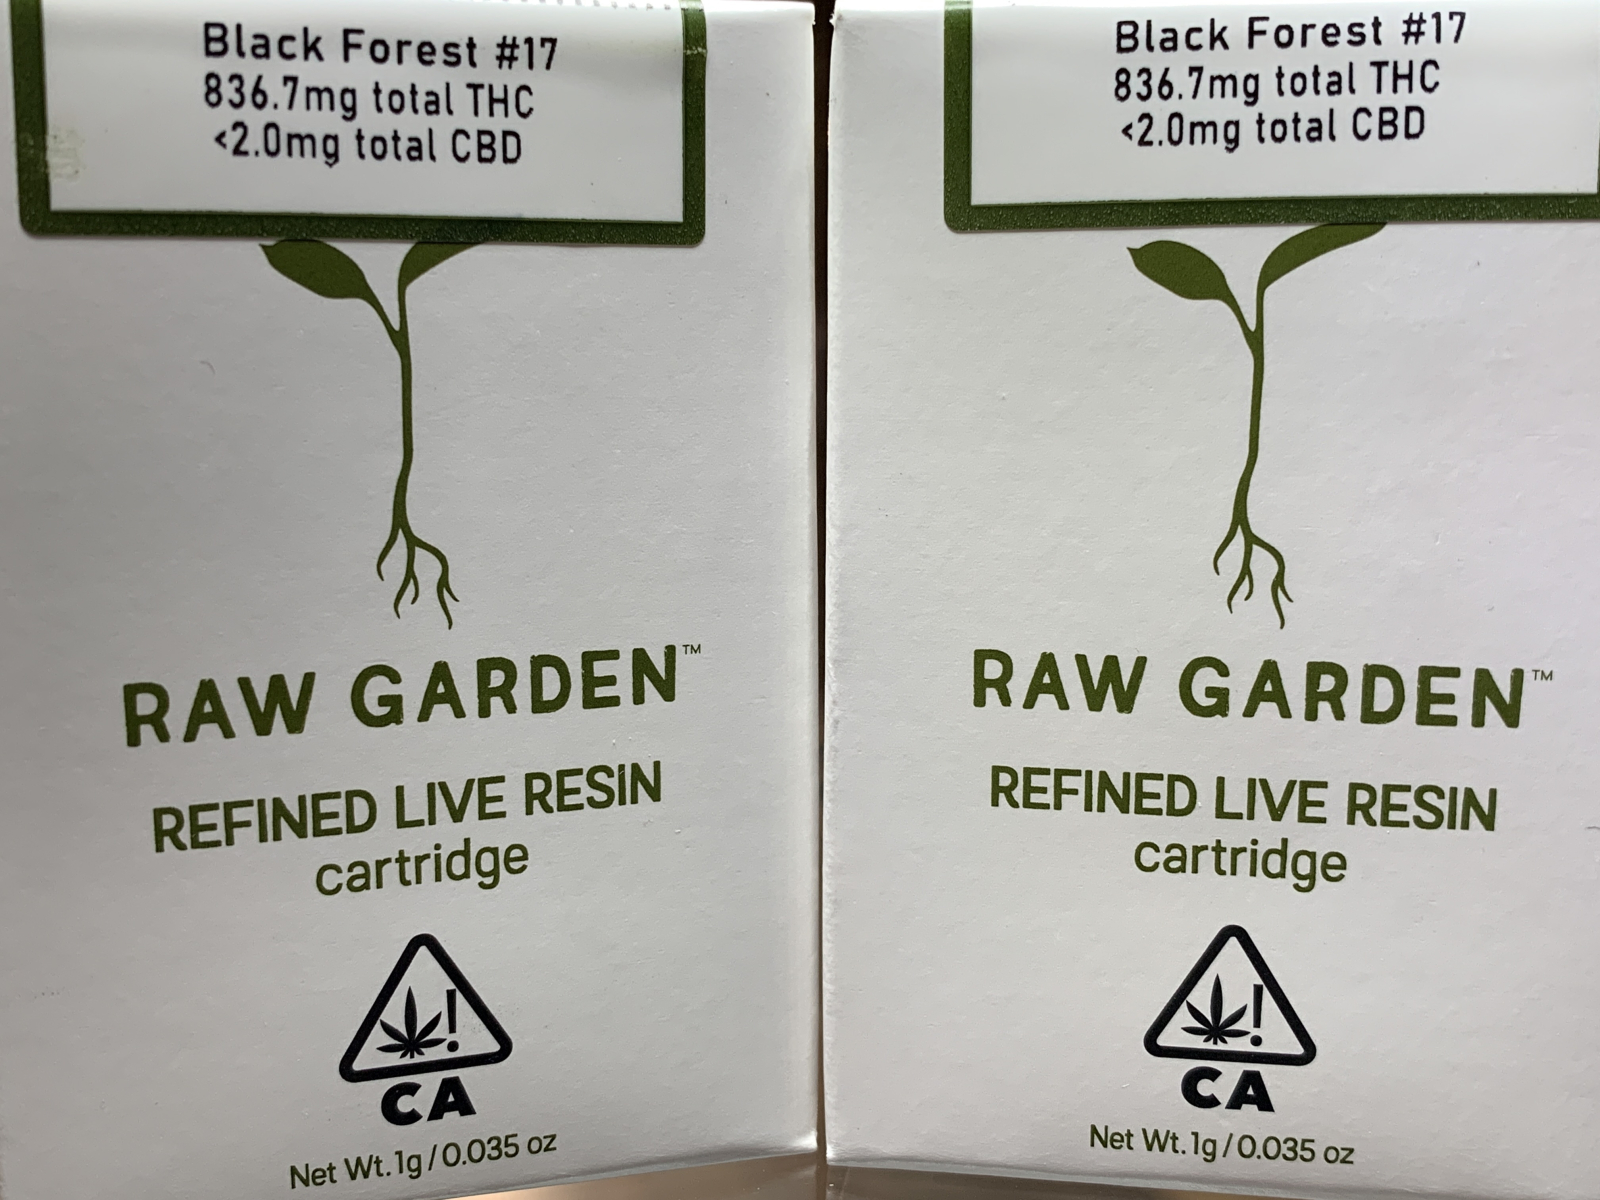 Raw Garden Black Forest #17 full gram cartridge 